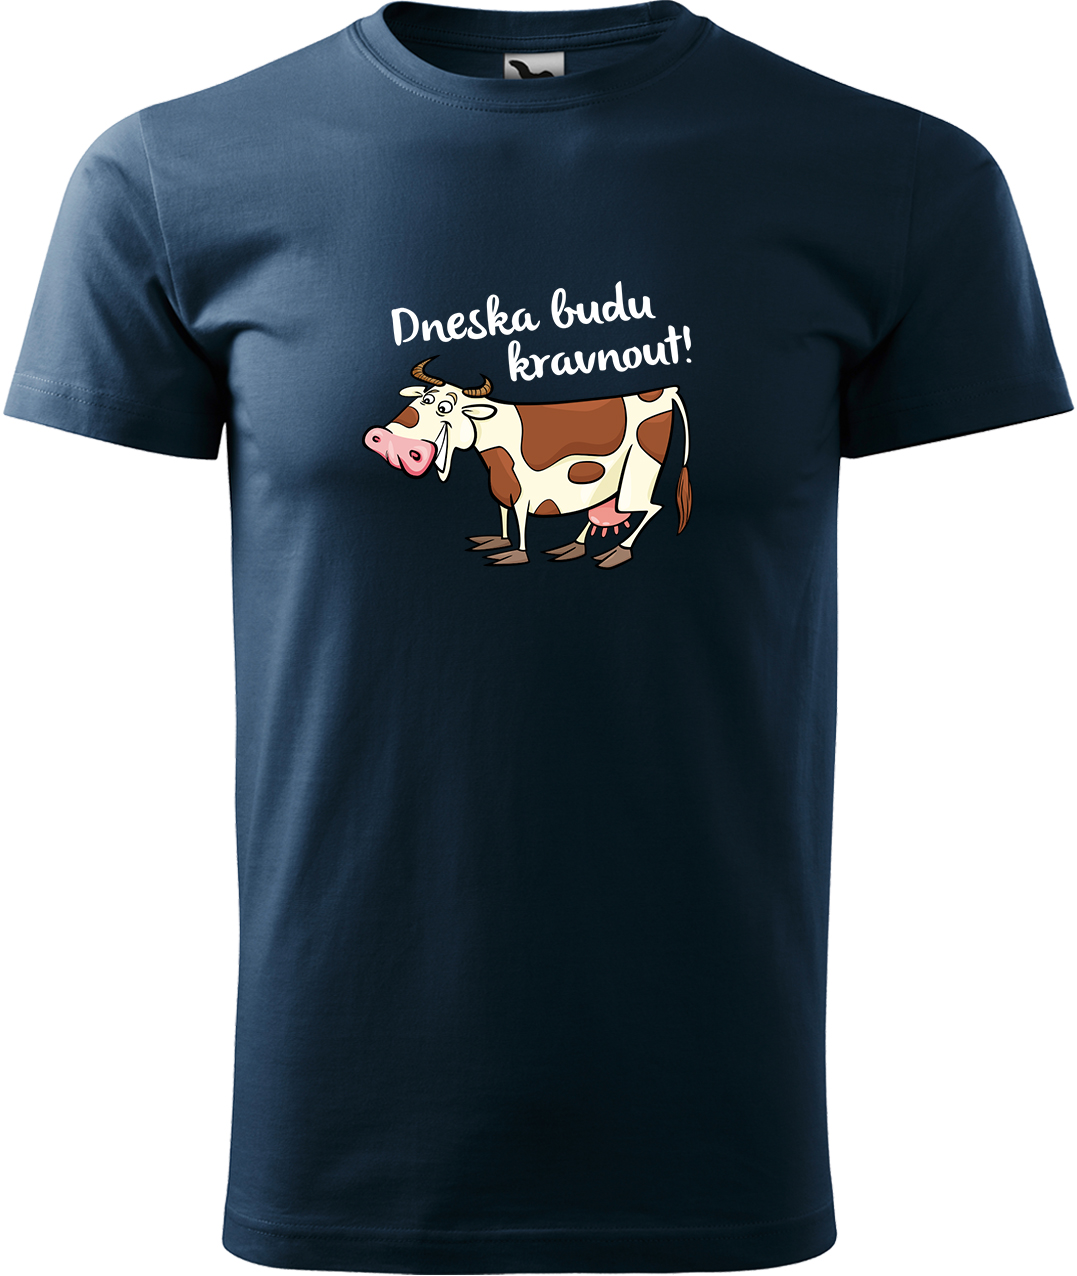 Pánské tričko s krávou - Dneska budu kravnout! Velikost: L, Barva: Námořní modrá (02), Střih: pánský